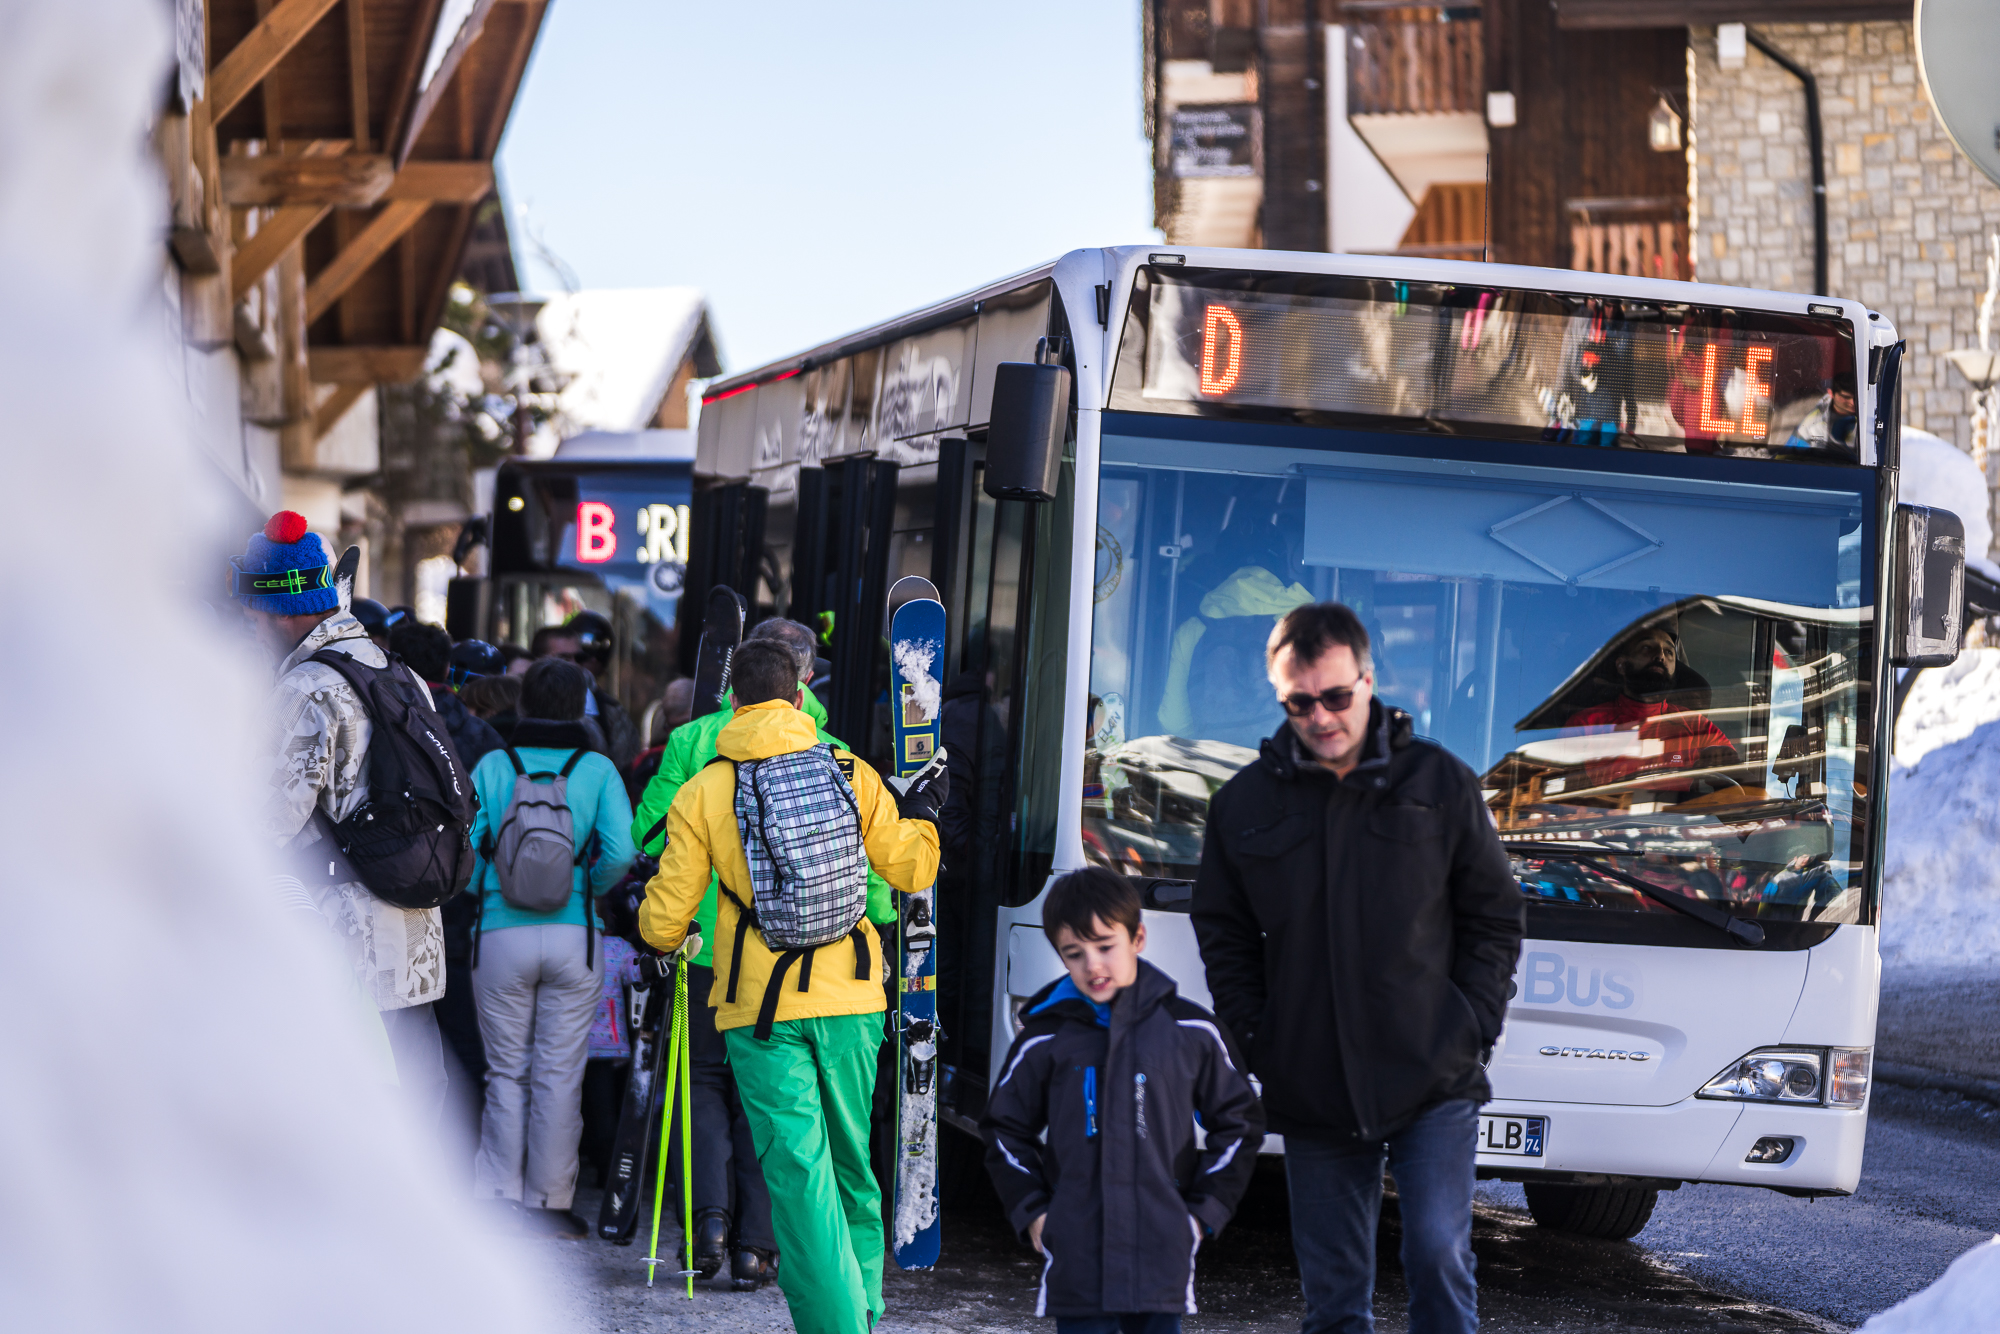 Bus gratuit des Gets en hiver avec vacanciers et skieurs